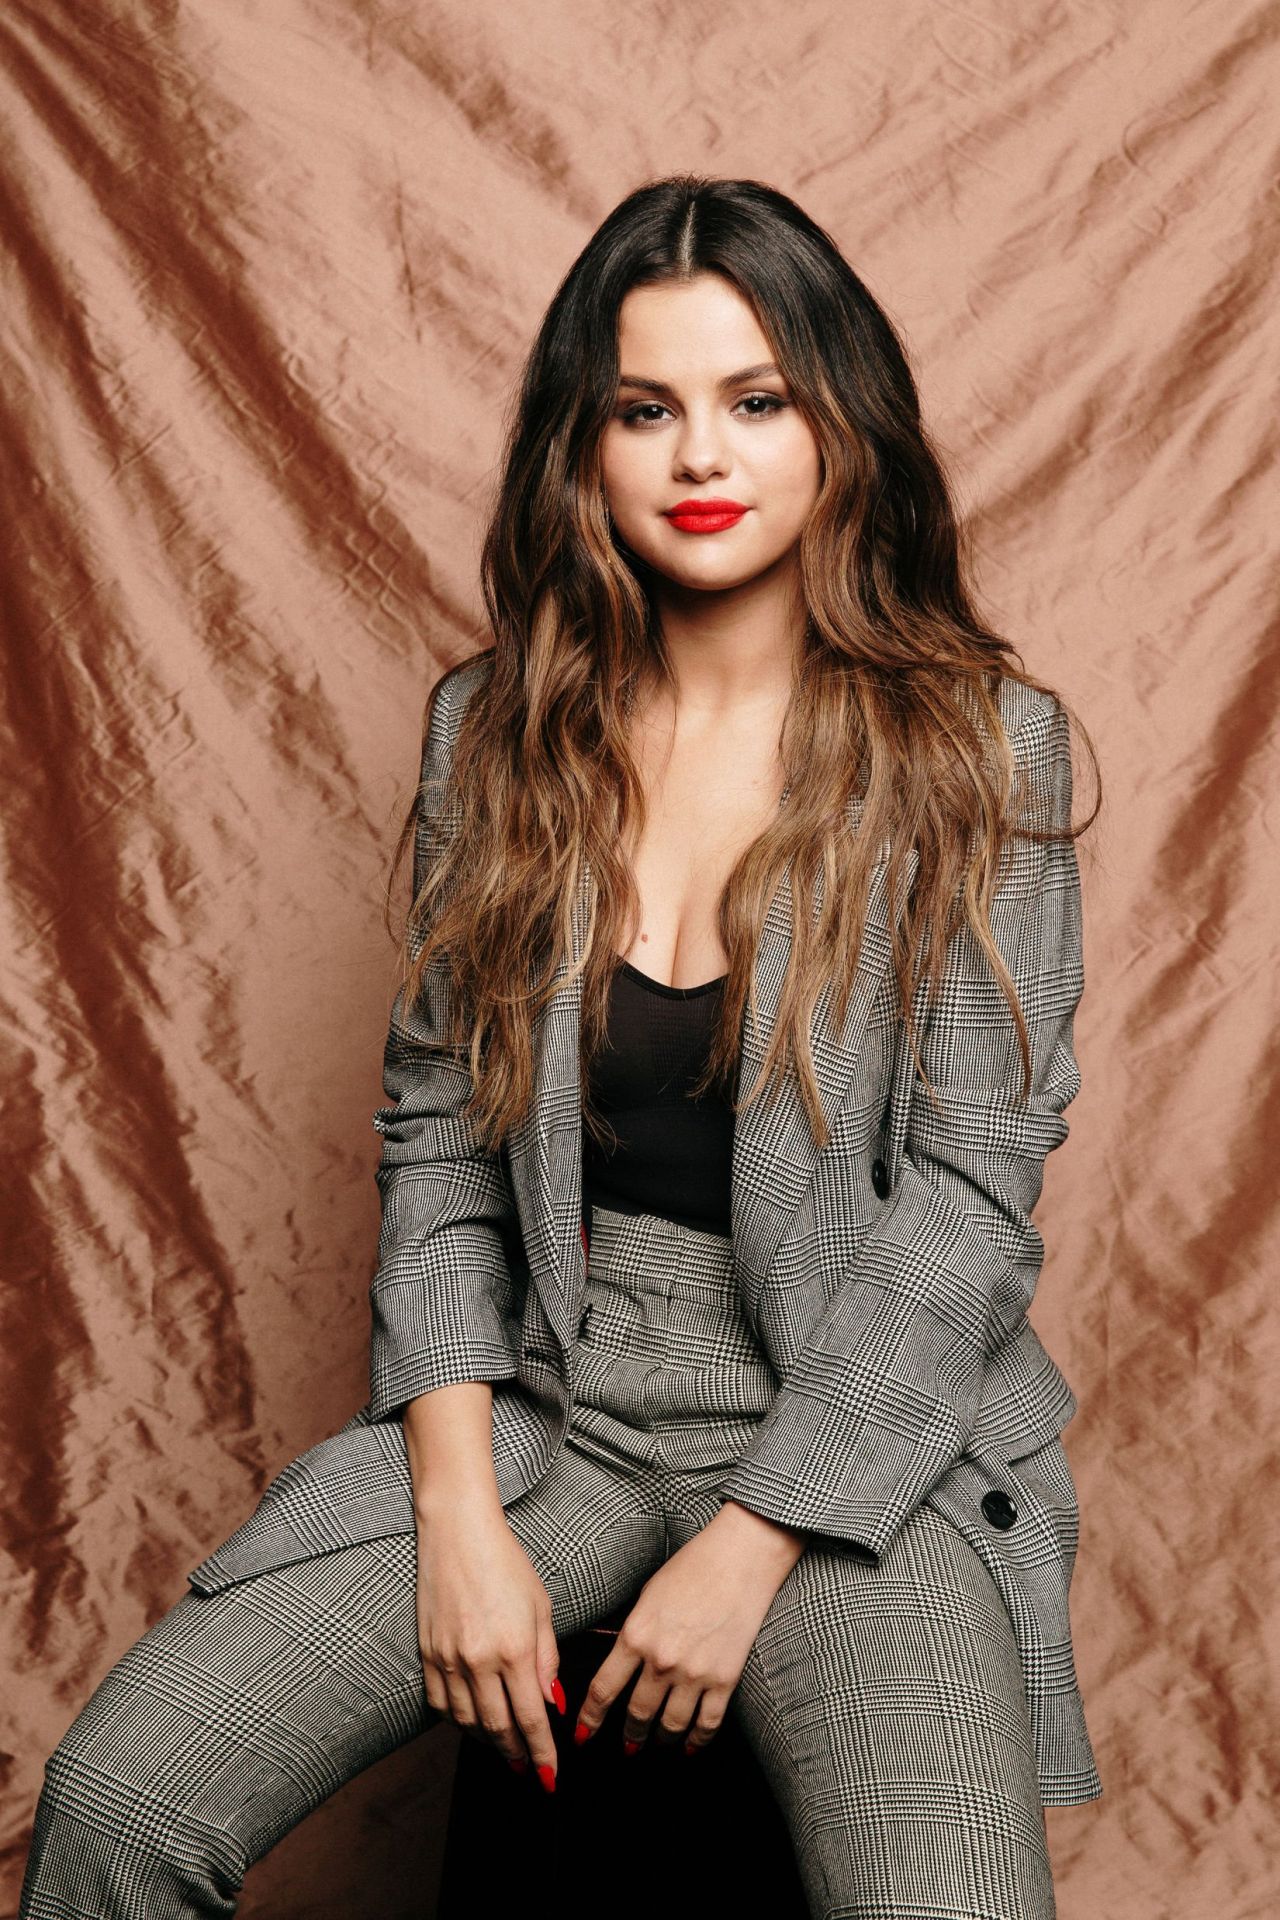 Selena Gomez Burbank November 14, 2019 – Star Style